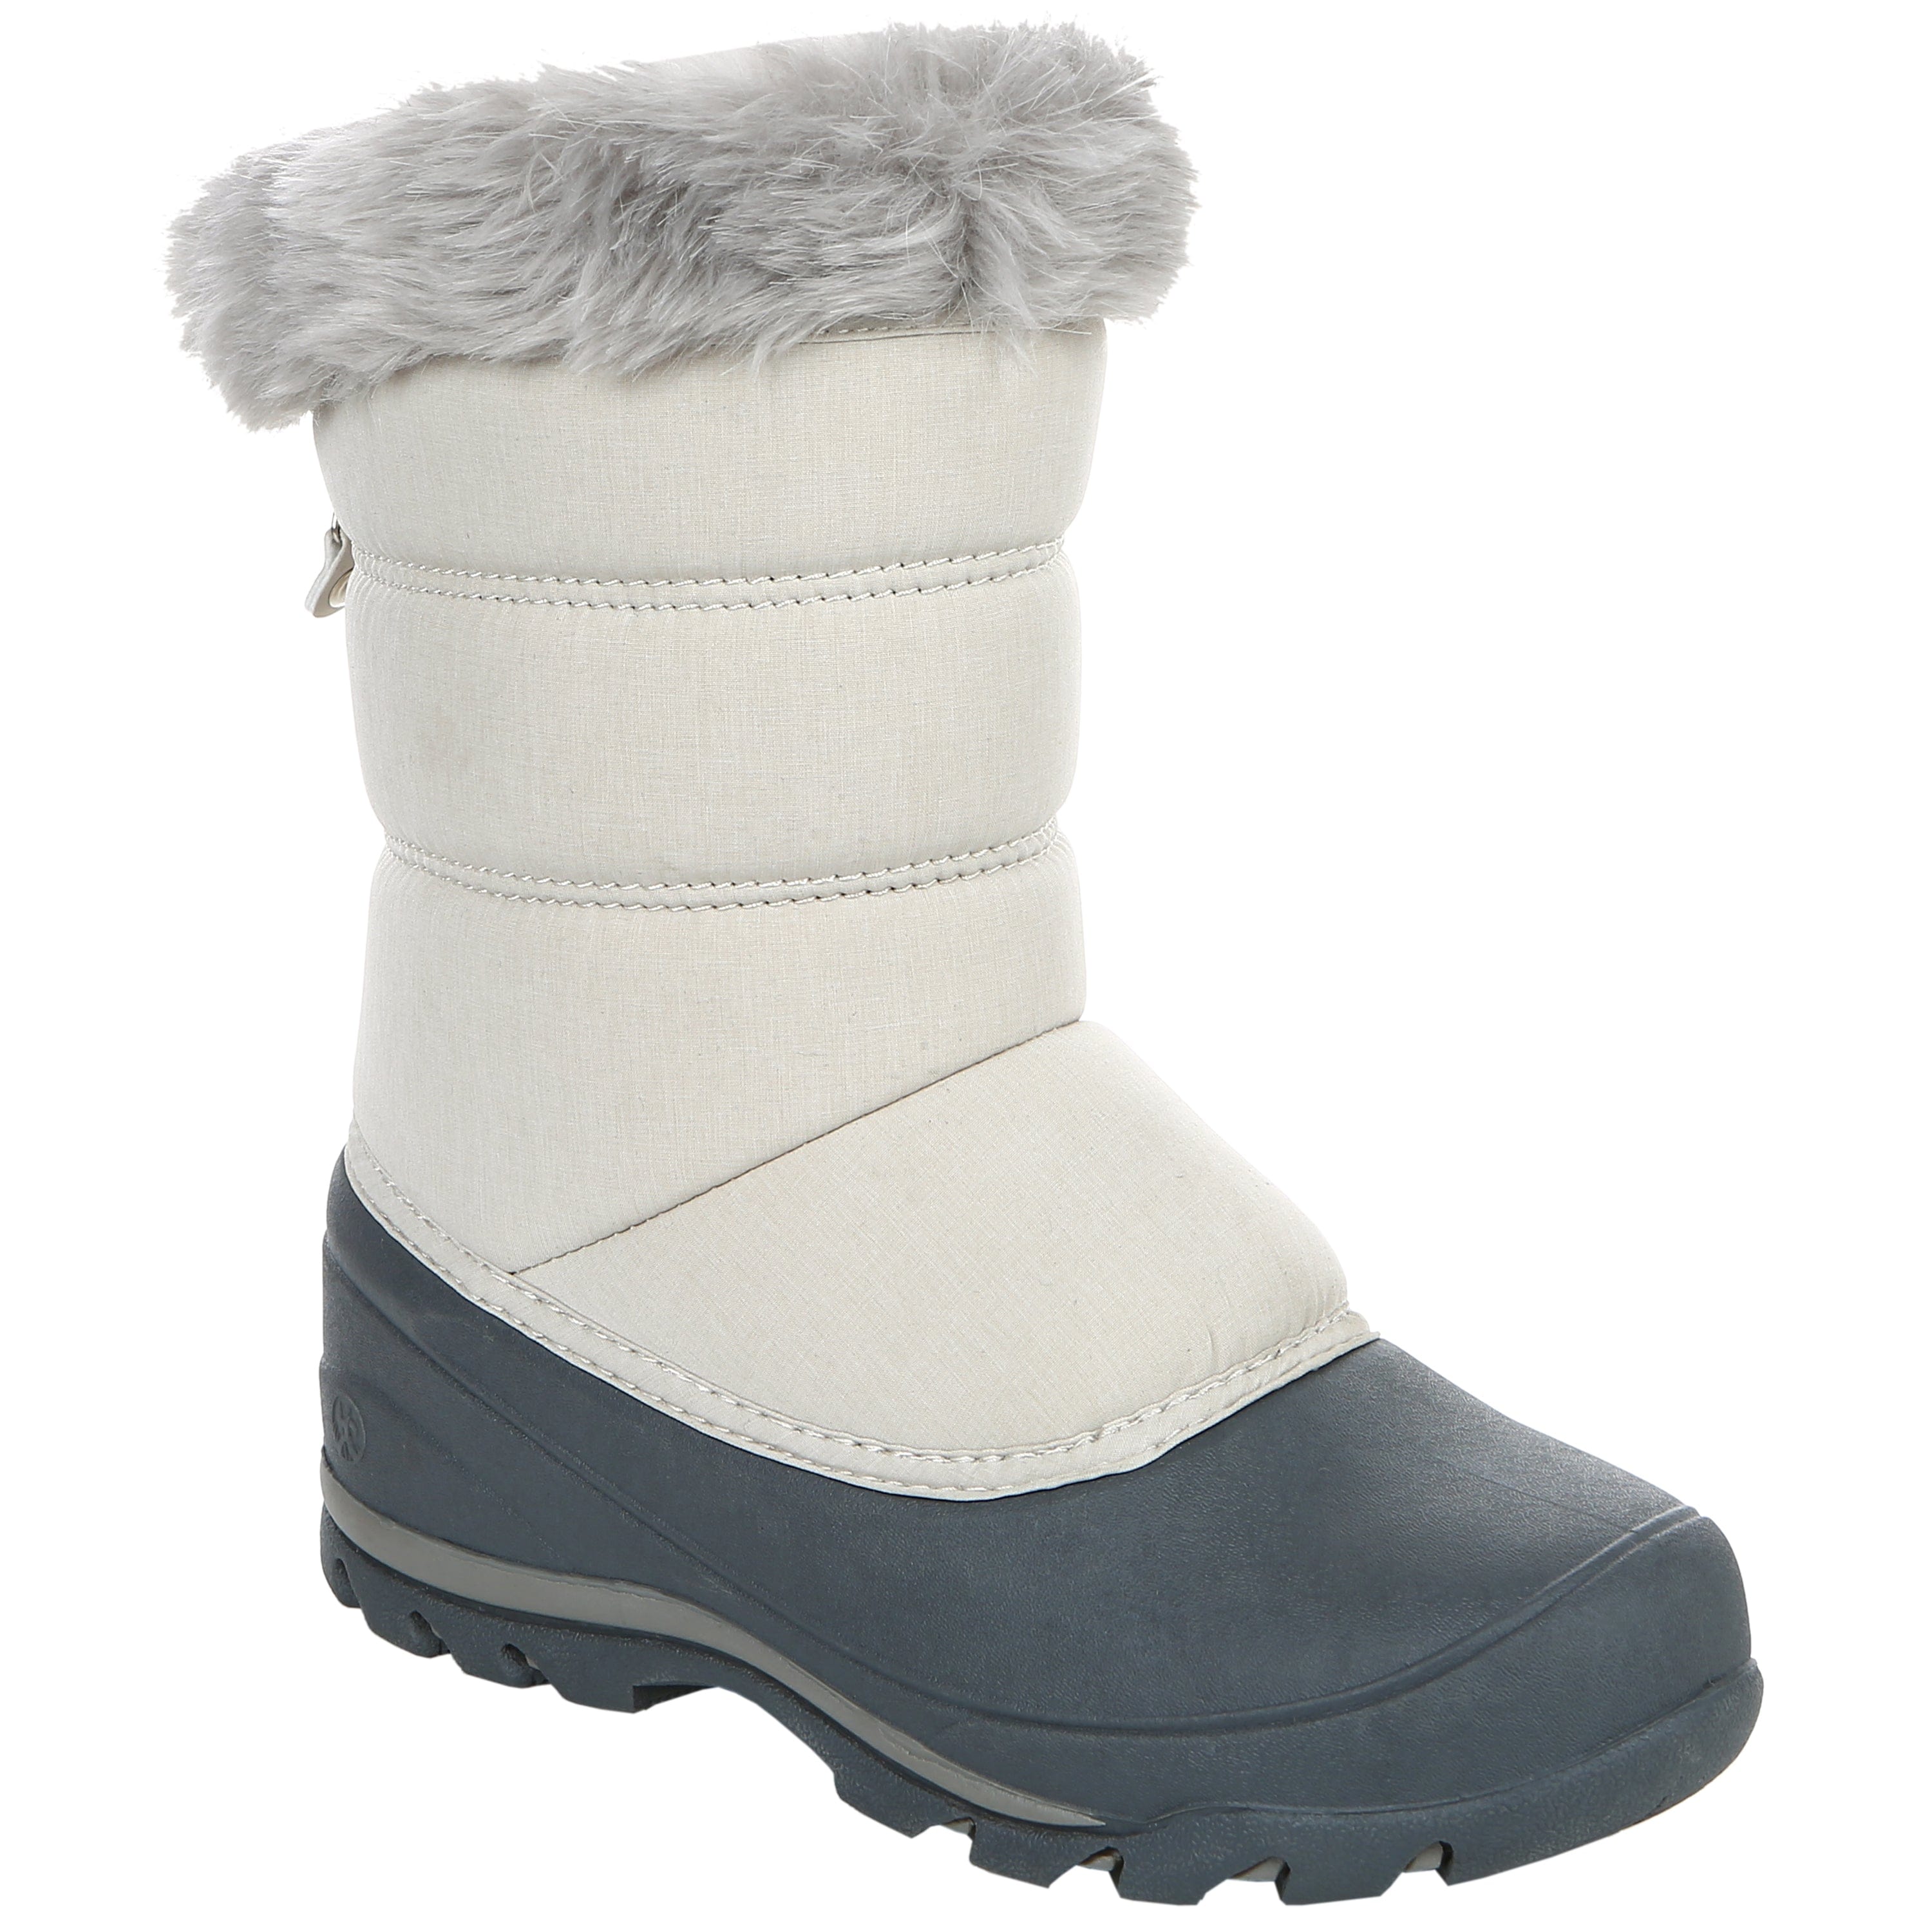 womens zip up snow boots cream color waterproof